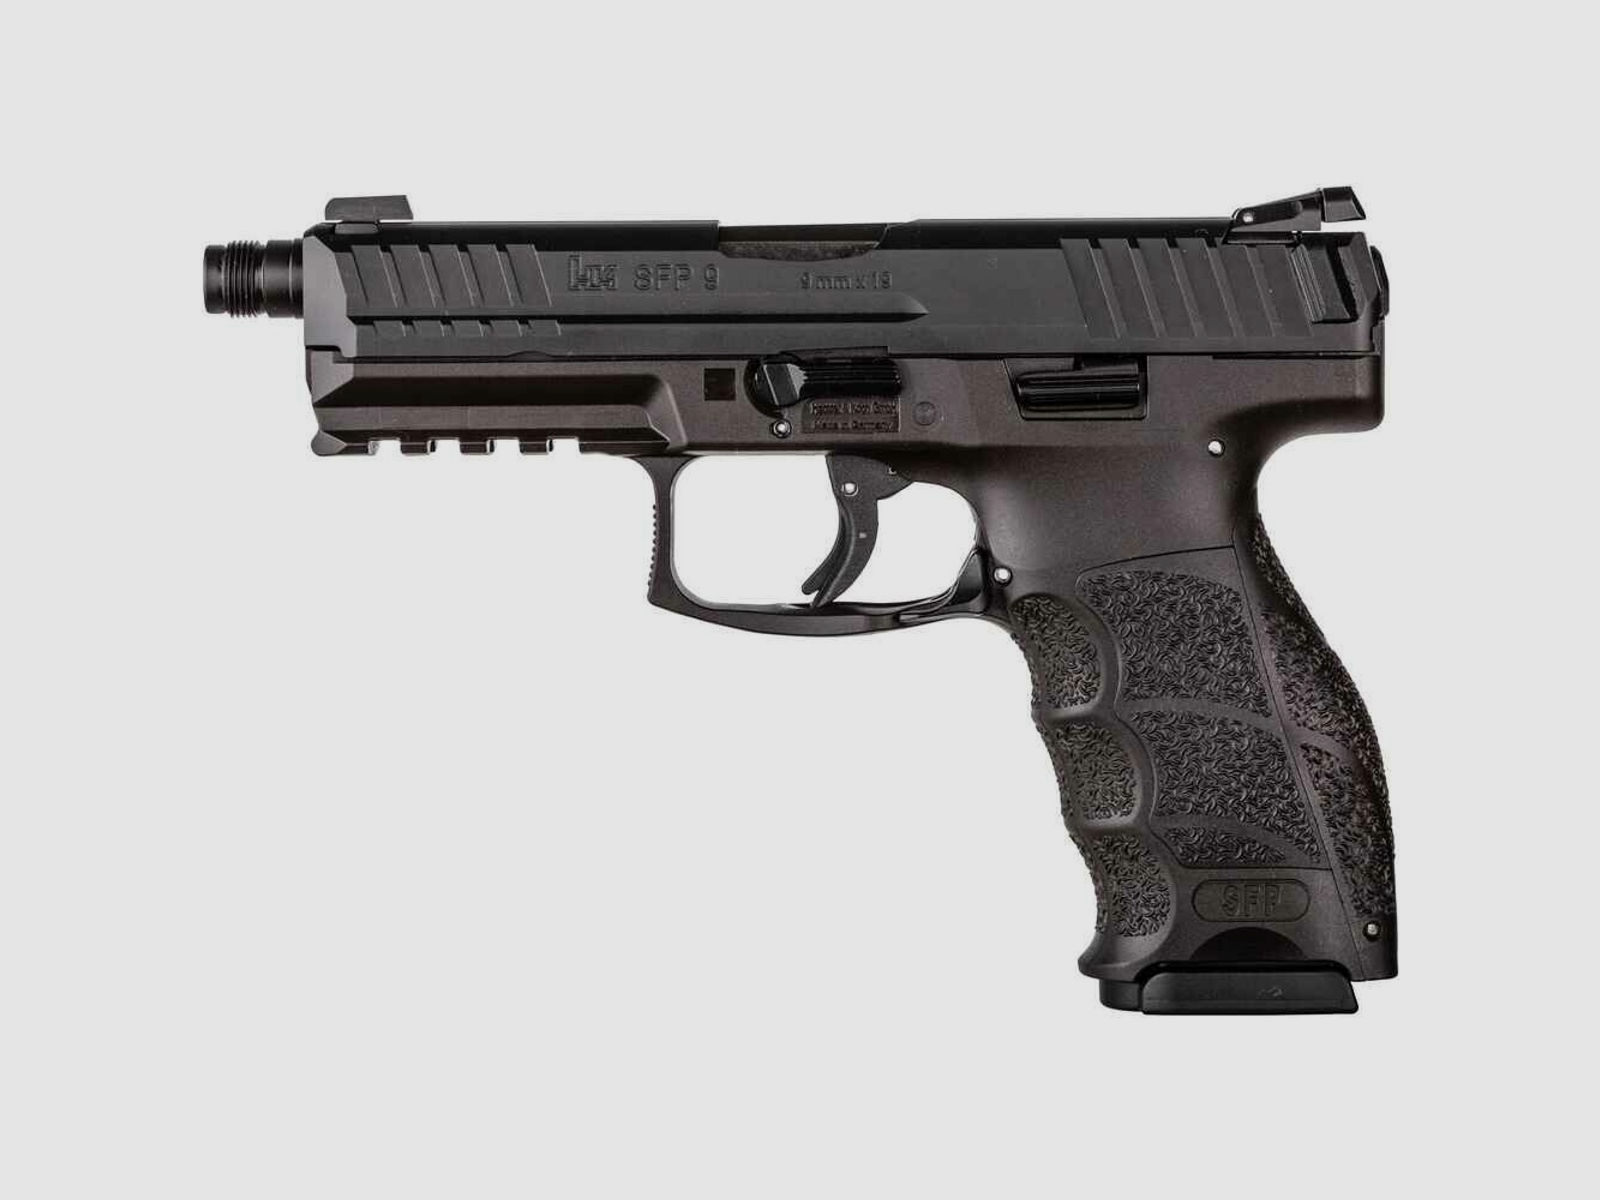 Heckler & Koch SFP9 SD, Kal. 9mm Luger